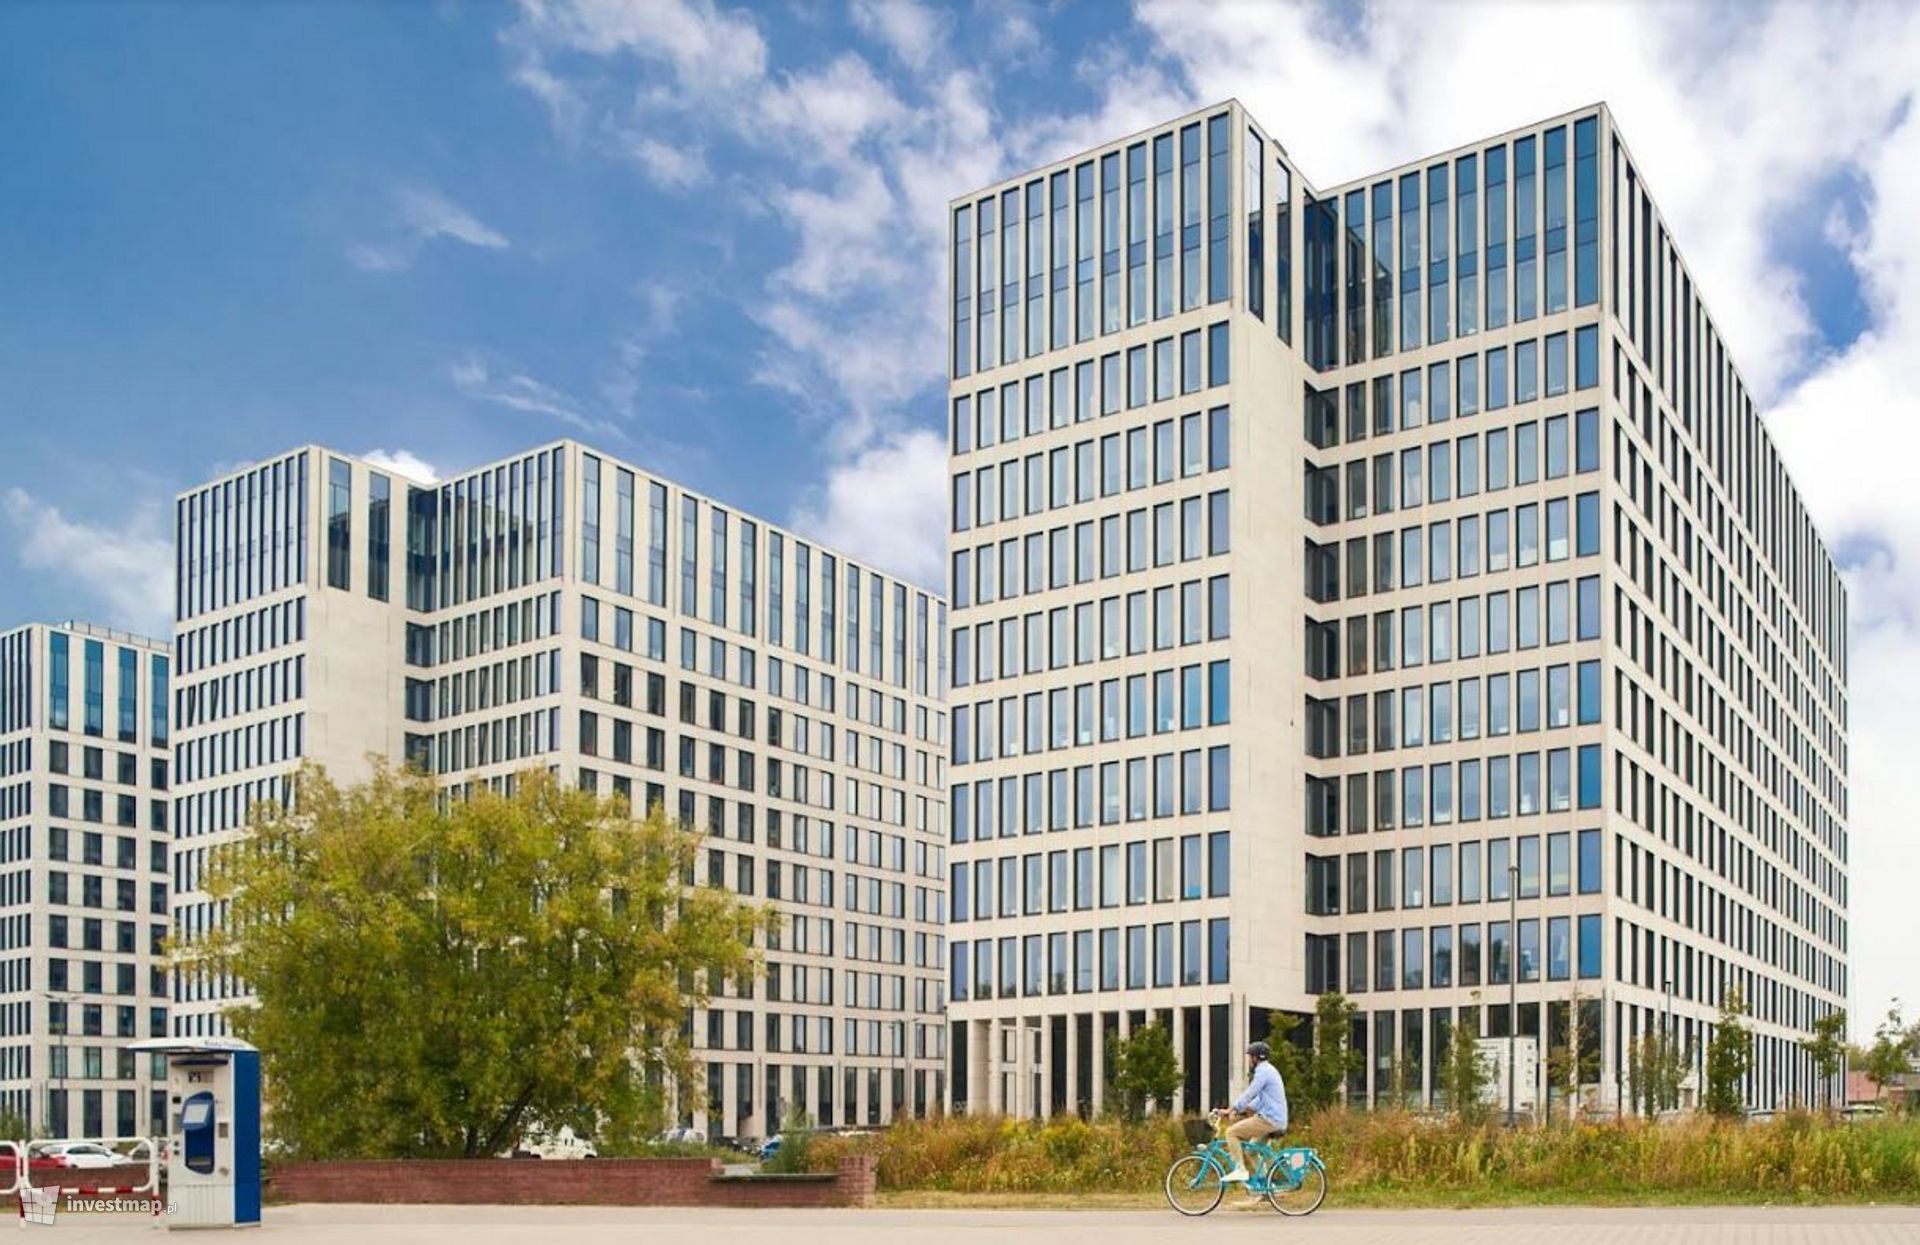 LUX MED zostaje w krakowskim O3 Business Campus na dłużej